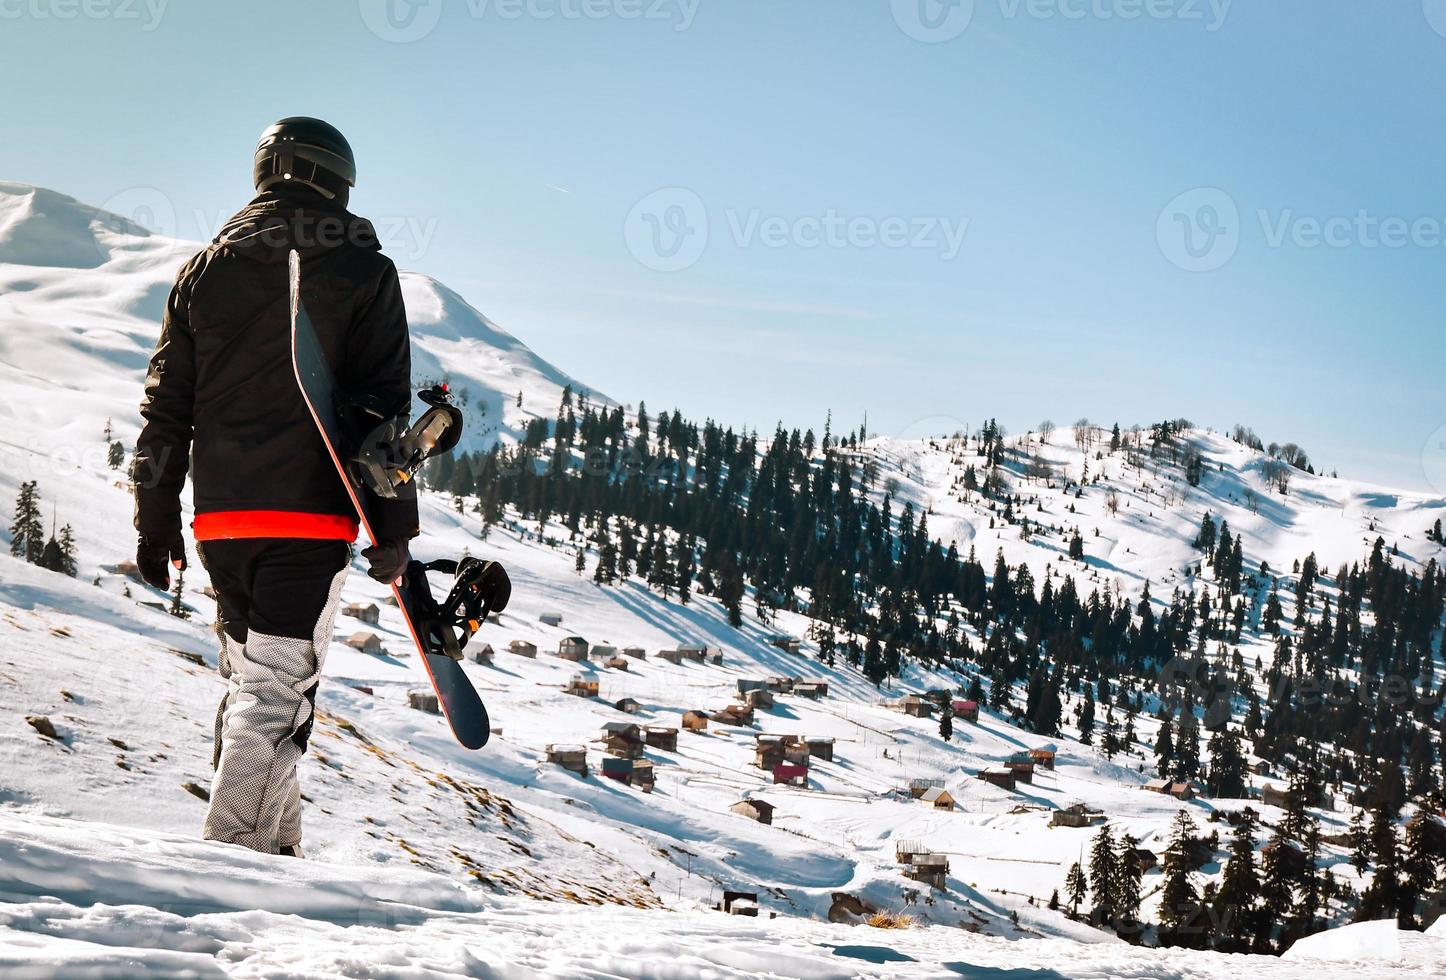 manntourist im skianzug mit snowboard in seinen händen geht auf schneebedeckten abhängen vor dem hintergrund der wunderschönen berglandschaft foto